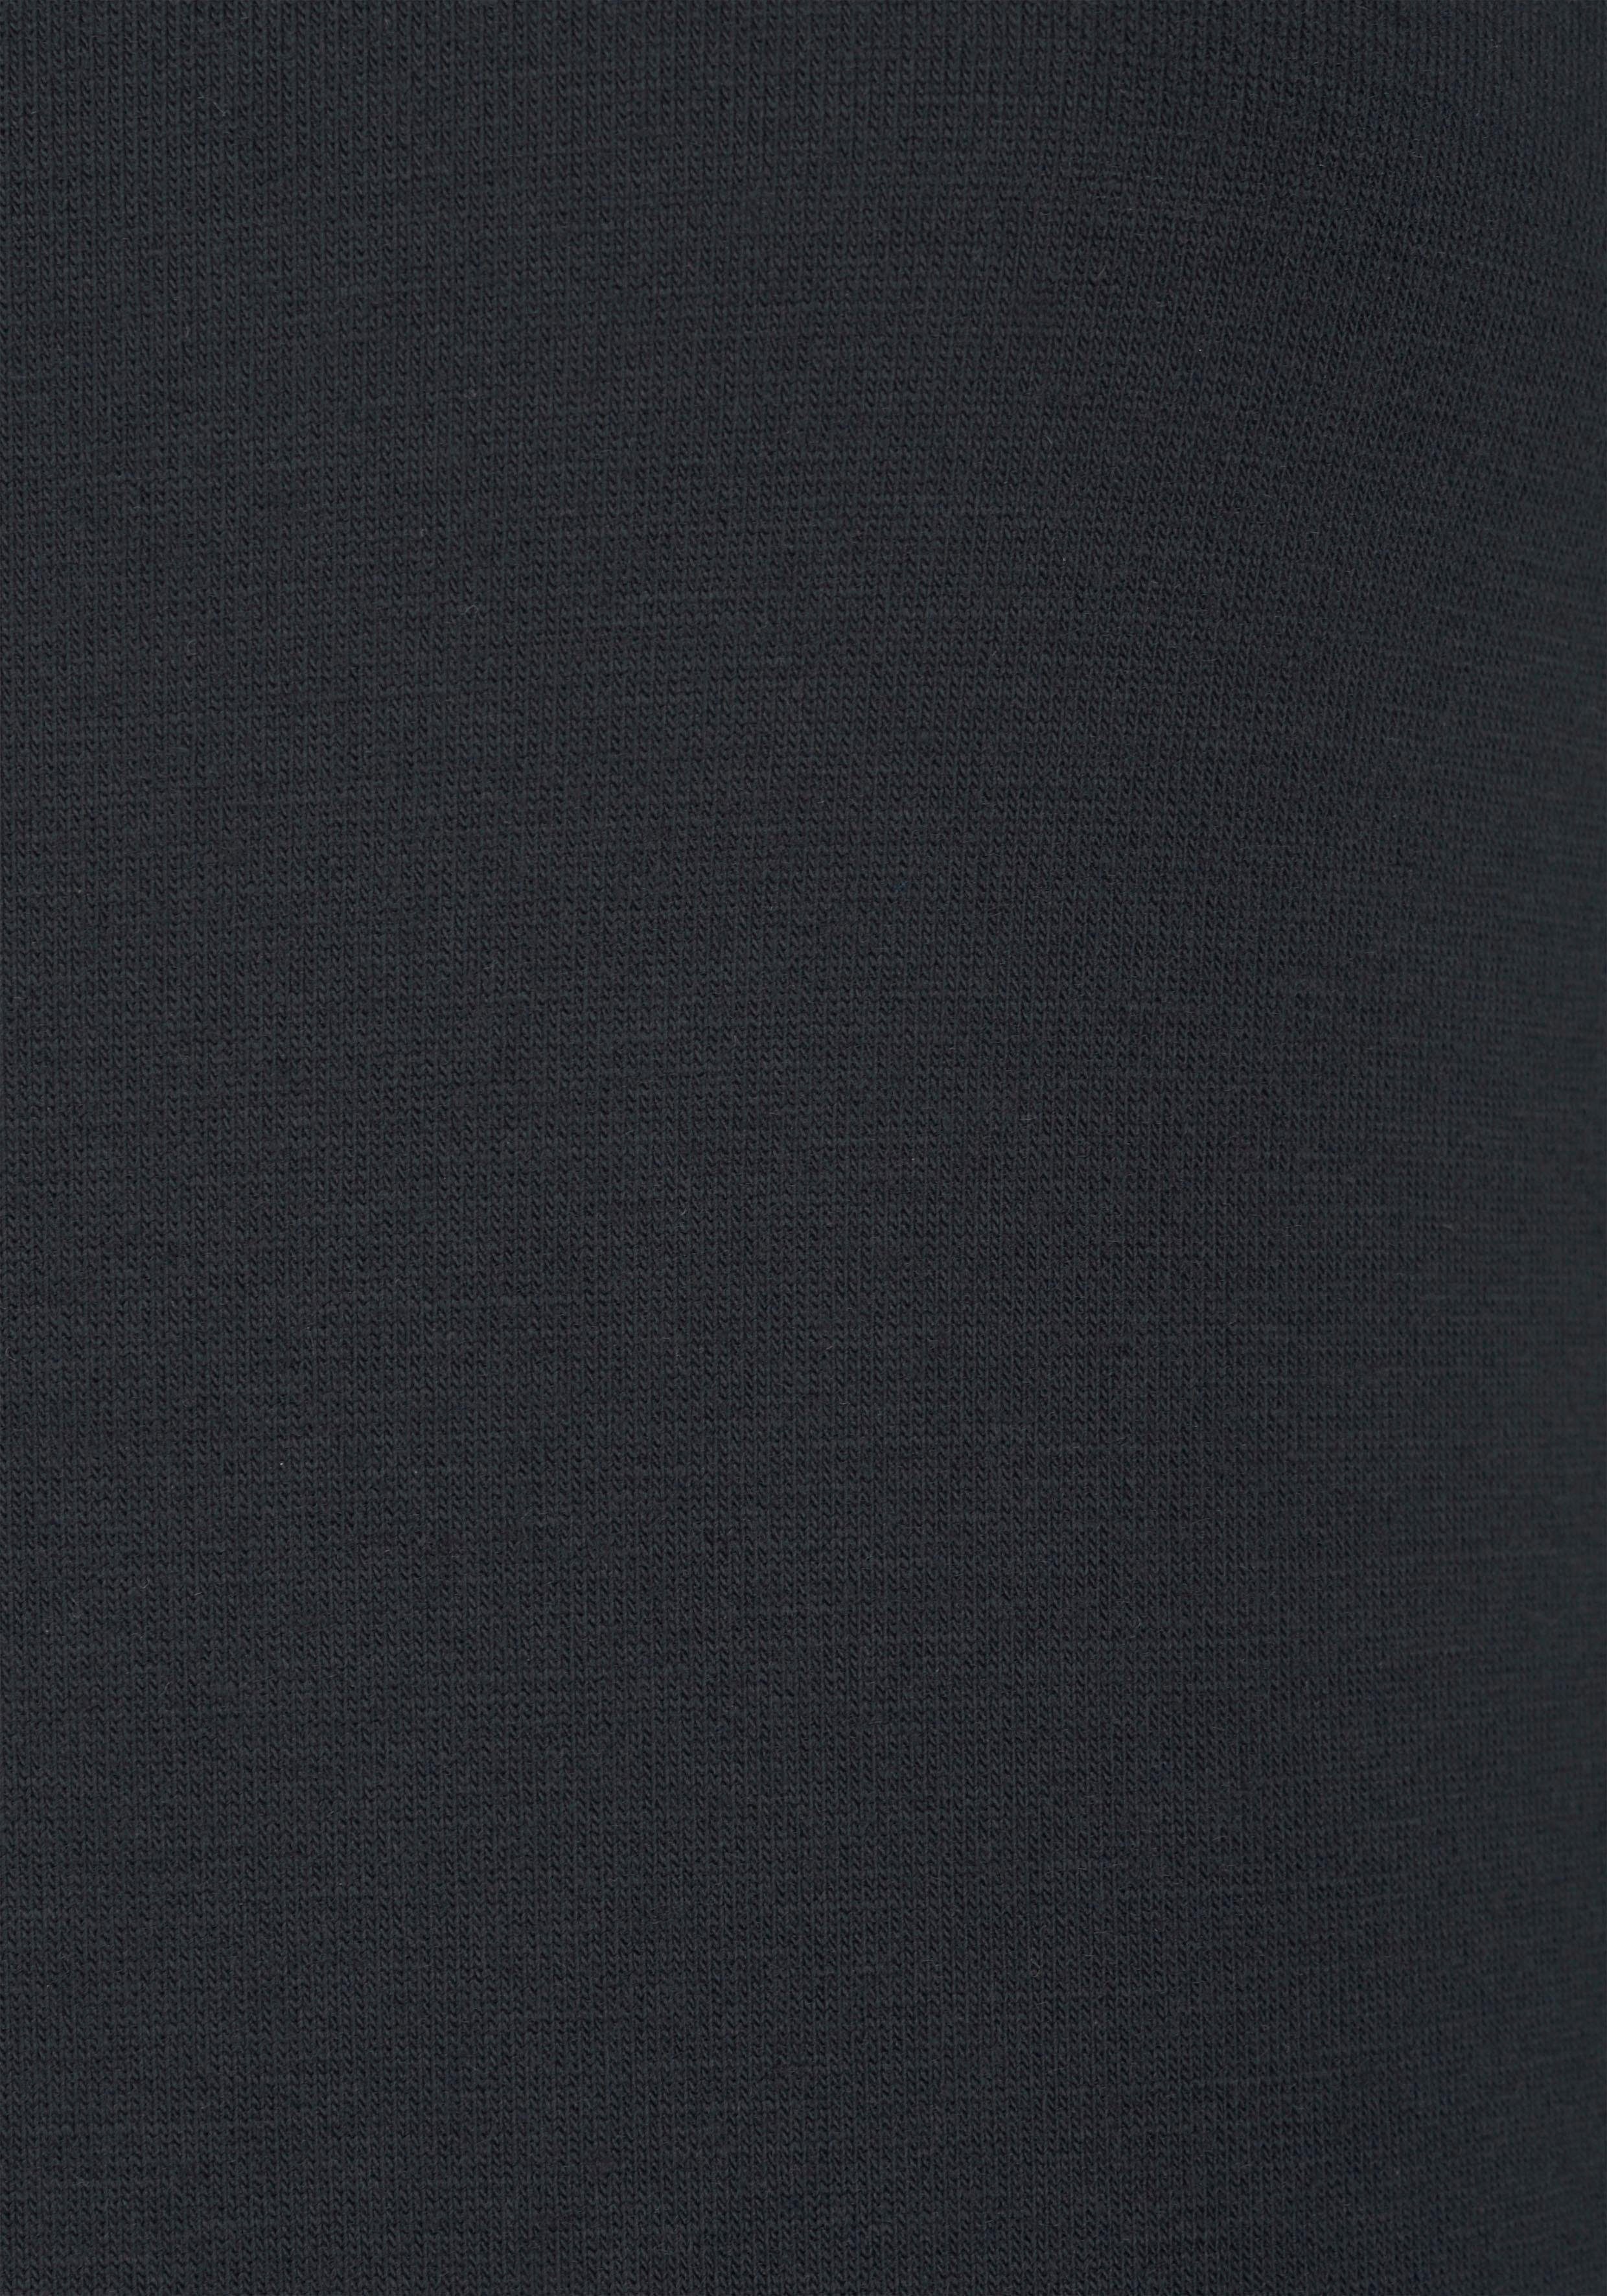 LASCANA T-Shirt mit schwarz Spitzenärmeln